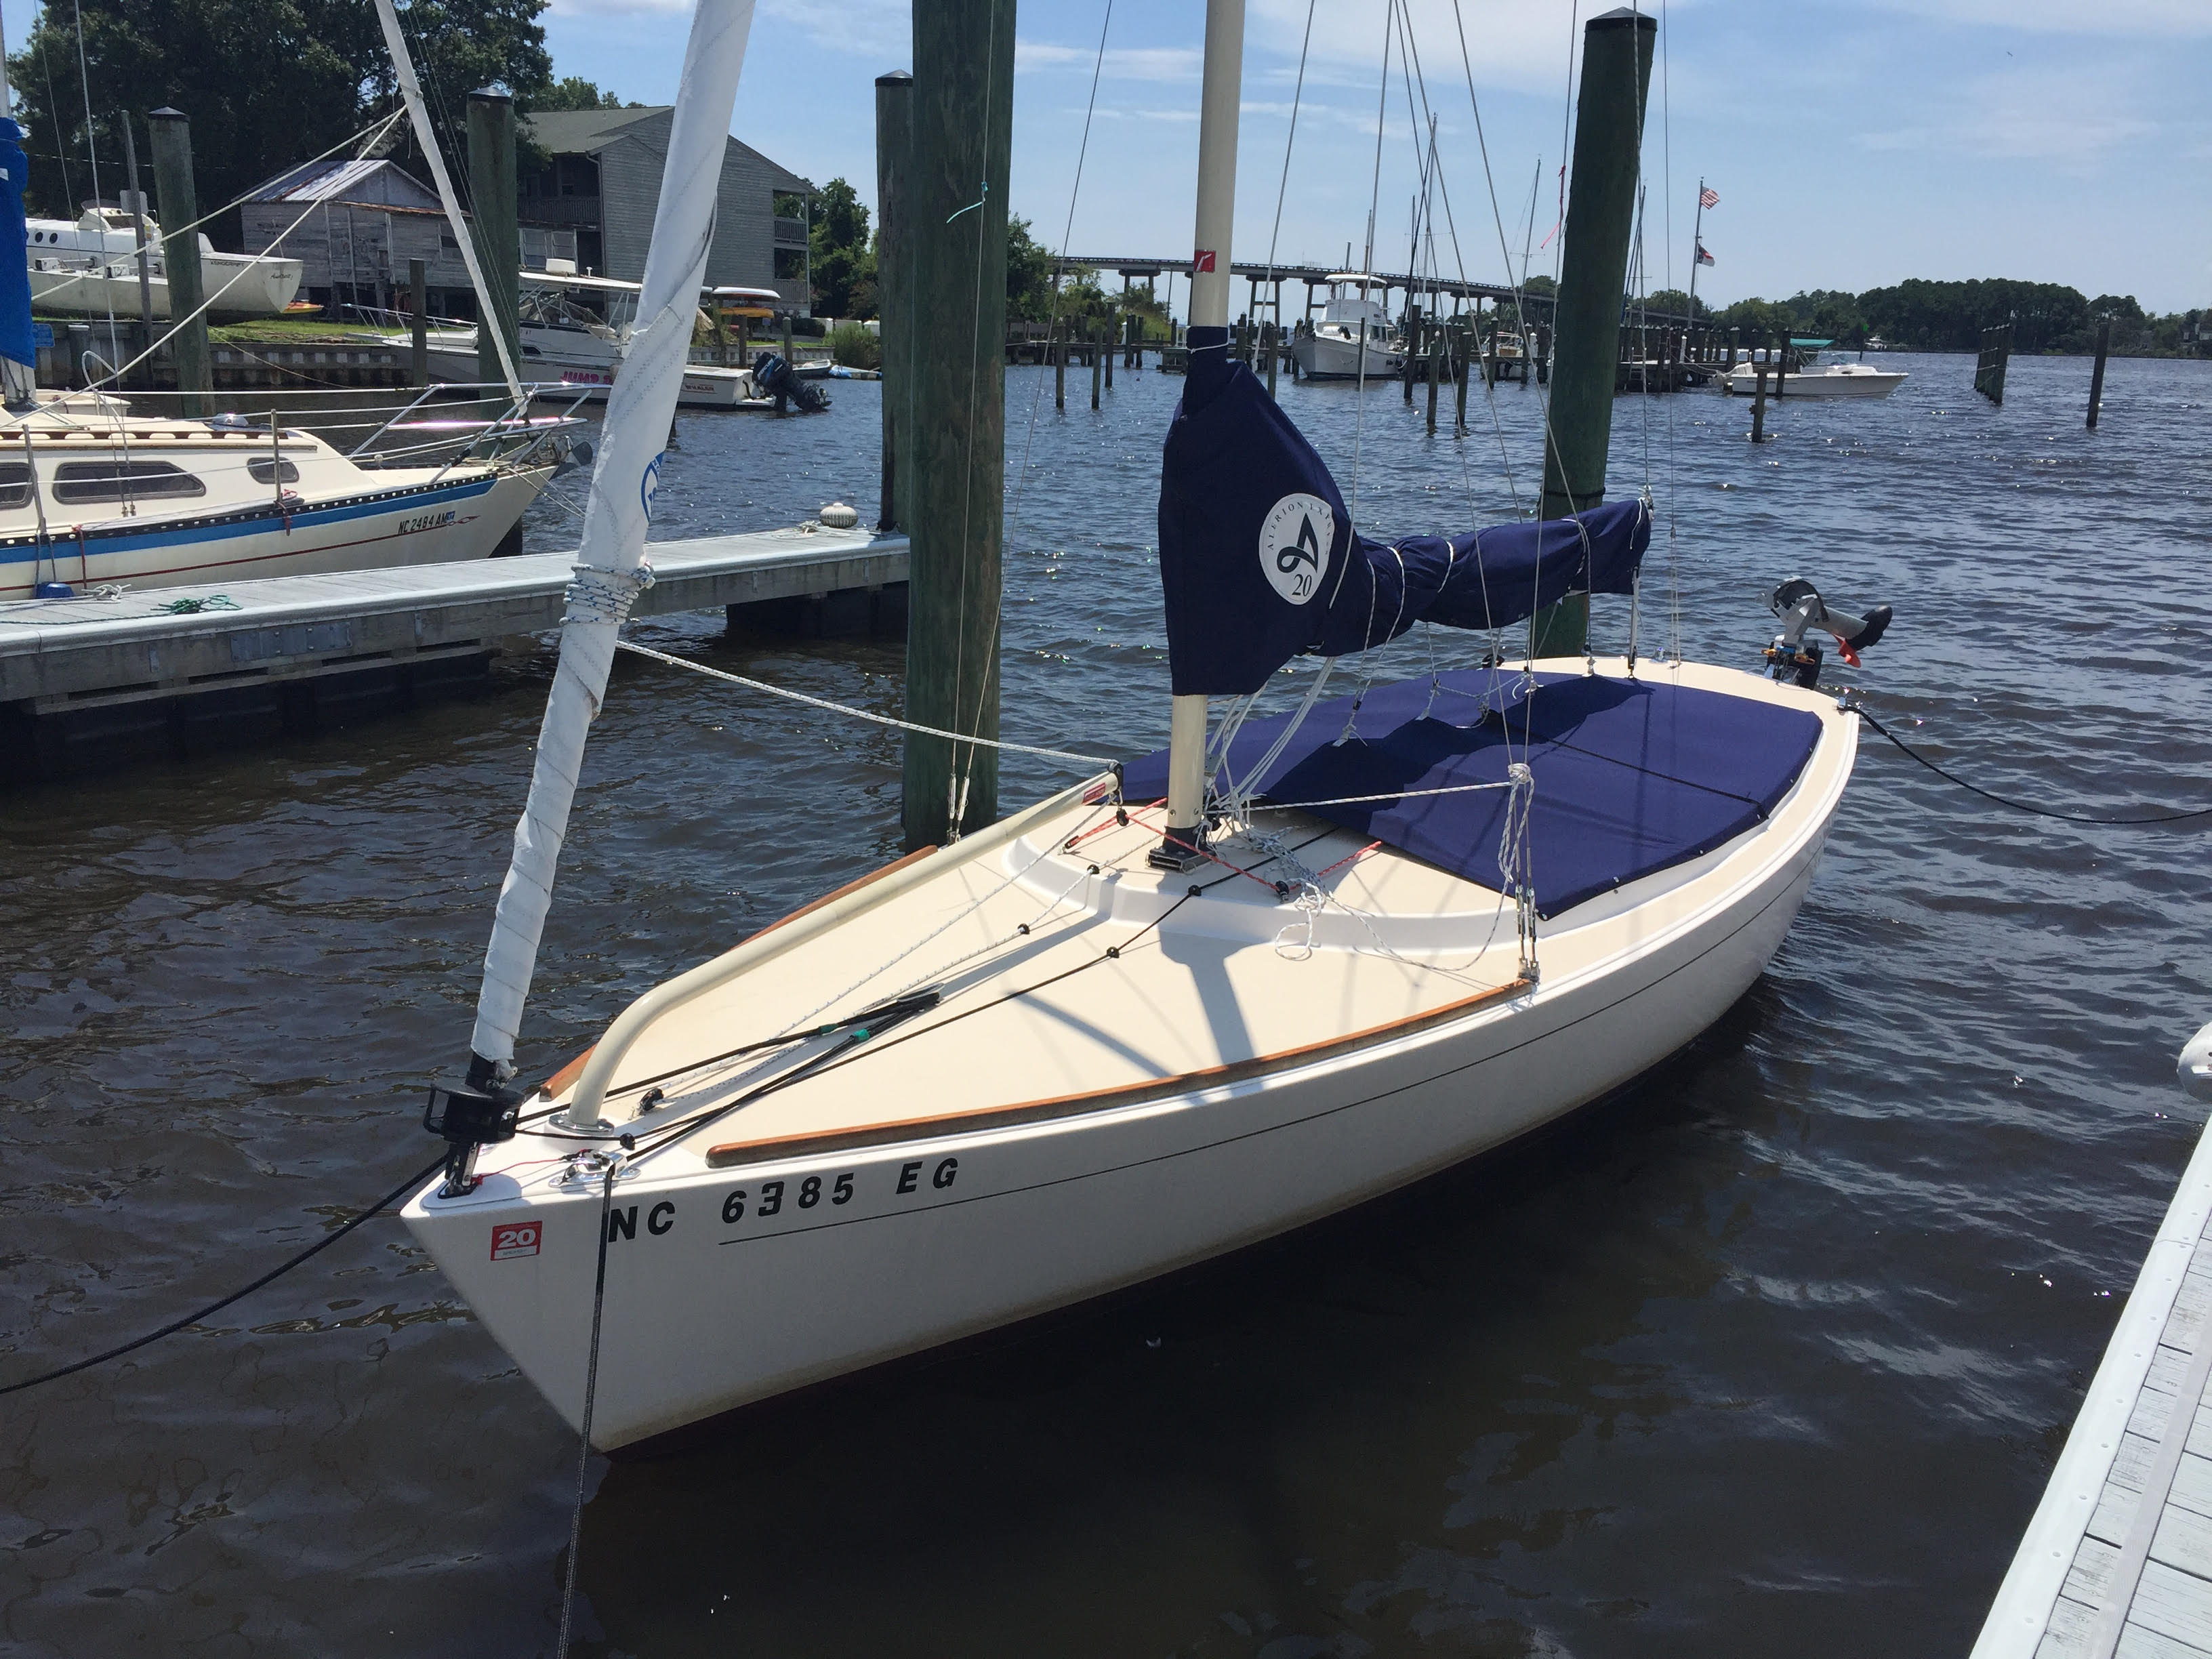 alerion express 20 sailboat for sale